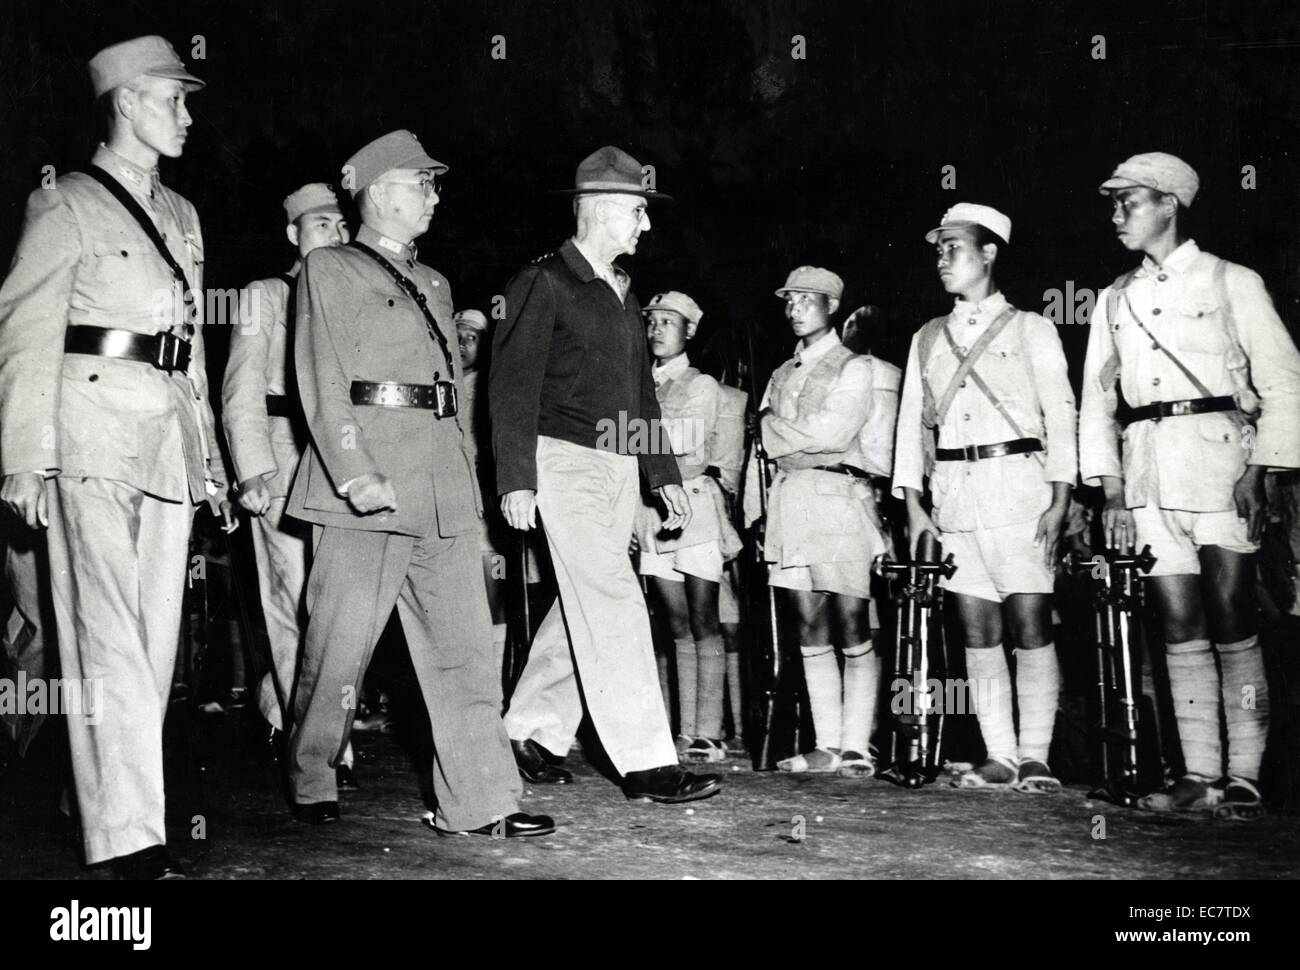 Lieutenant General Joseph W. Stilwell Inspektion chinesische Truppen in Indien, auf seiner rechten durch General Sun Li Zen und Lo begleitet. Das ehemalige ist der kommandierende General und Letztere stellvertretender Stabschef der Chinesischen Expeditionskorps. 1942. Stockfoto